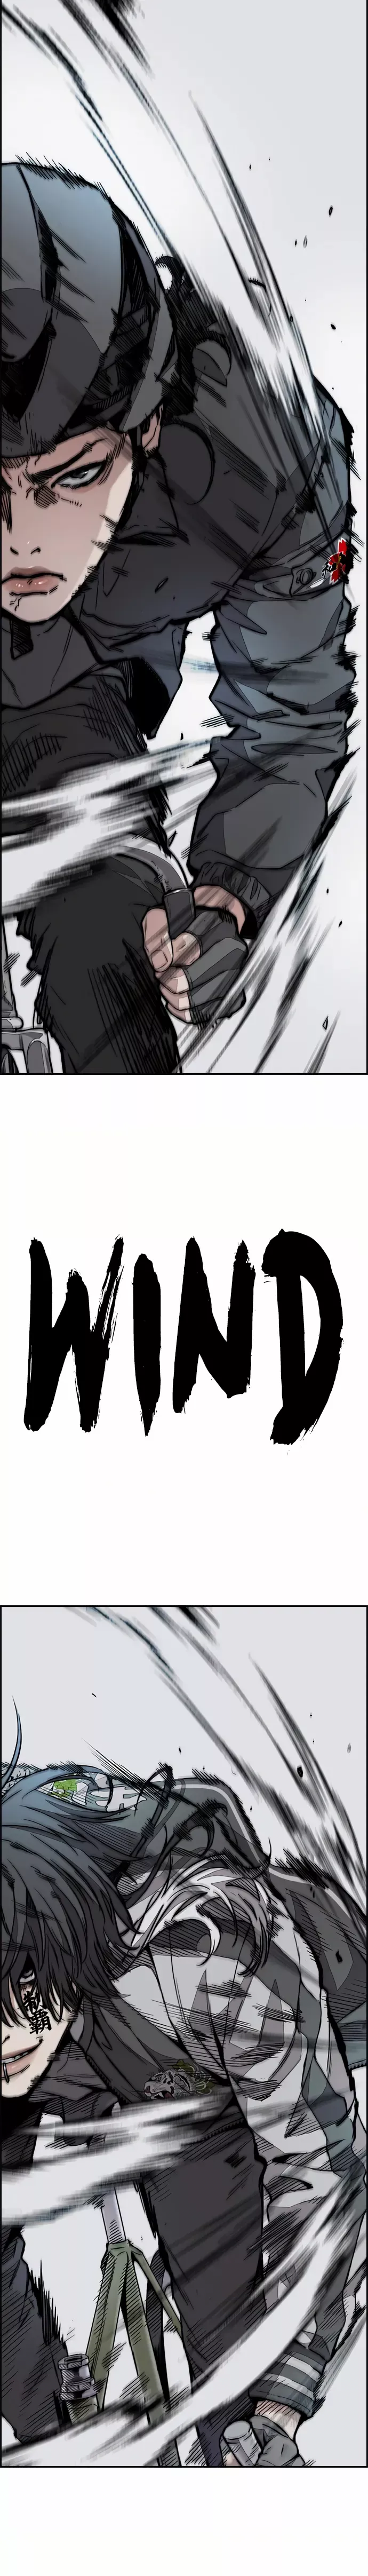 Wind Breaker - episode 467 - 35